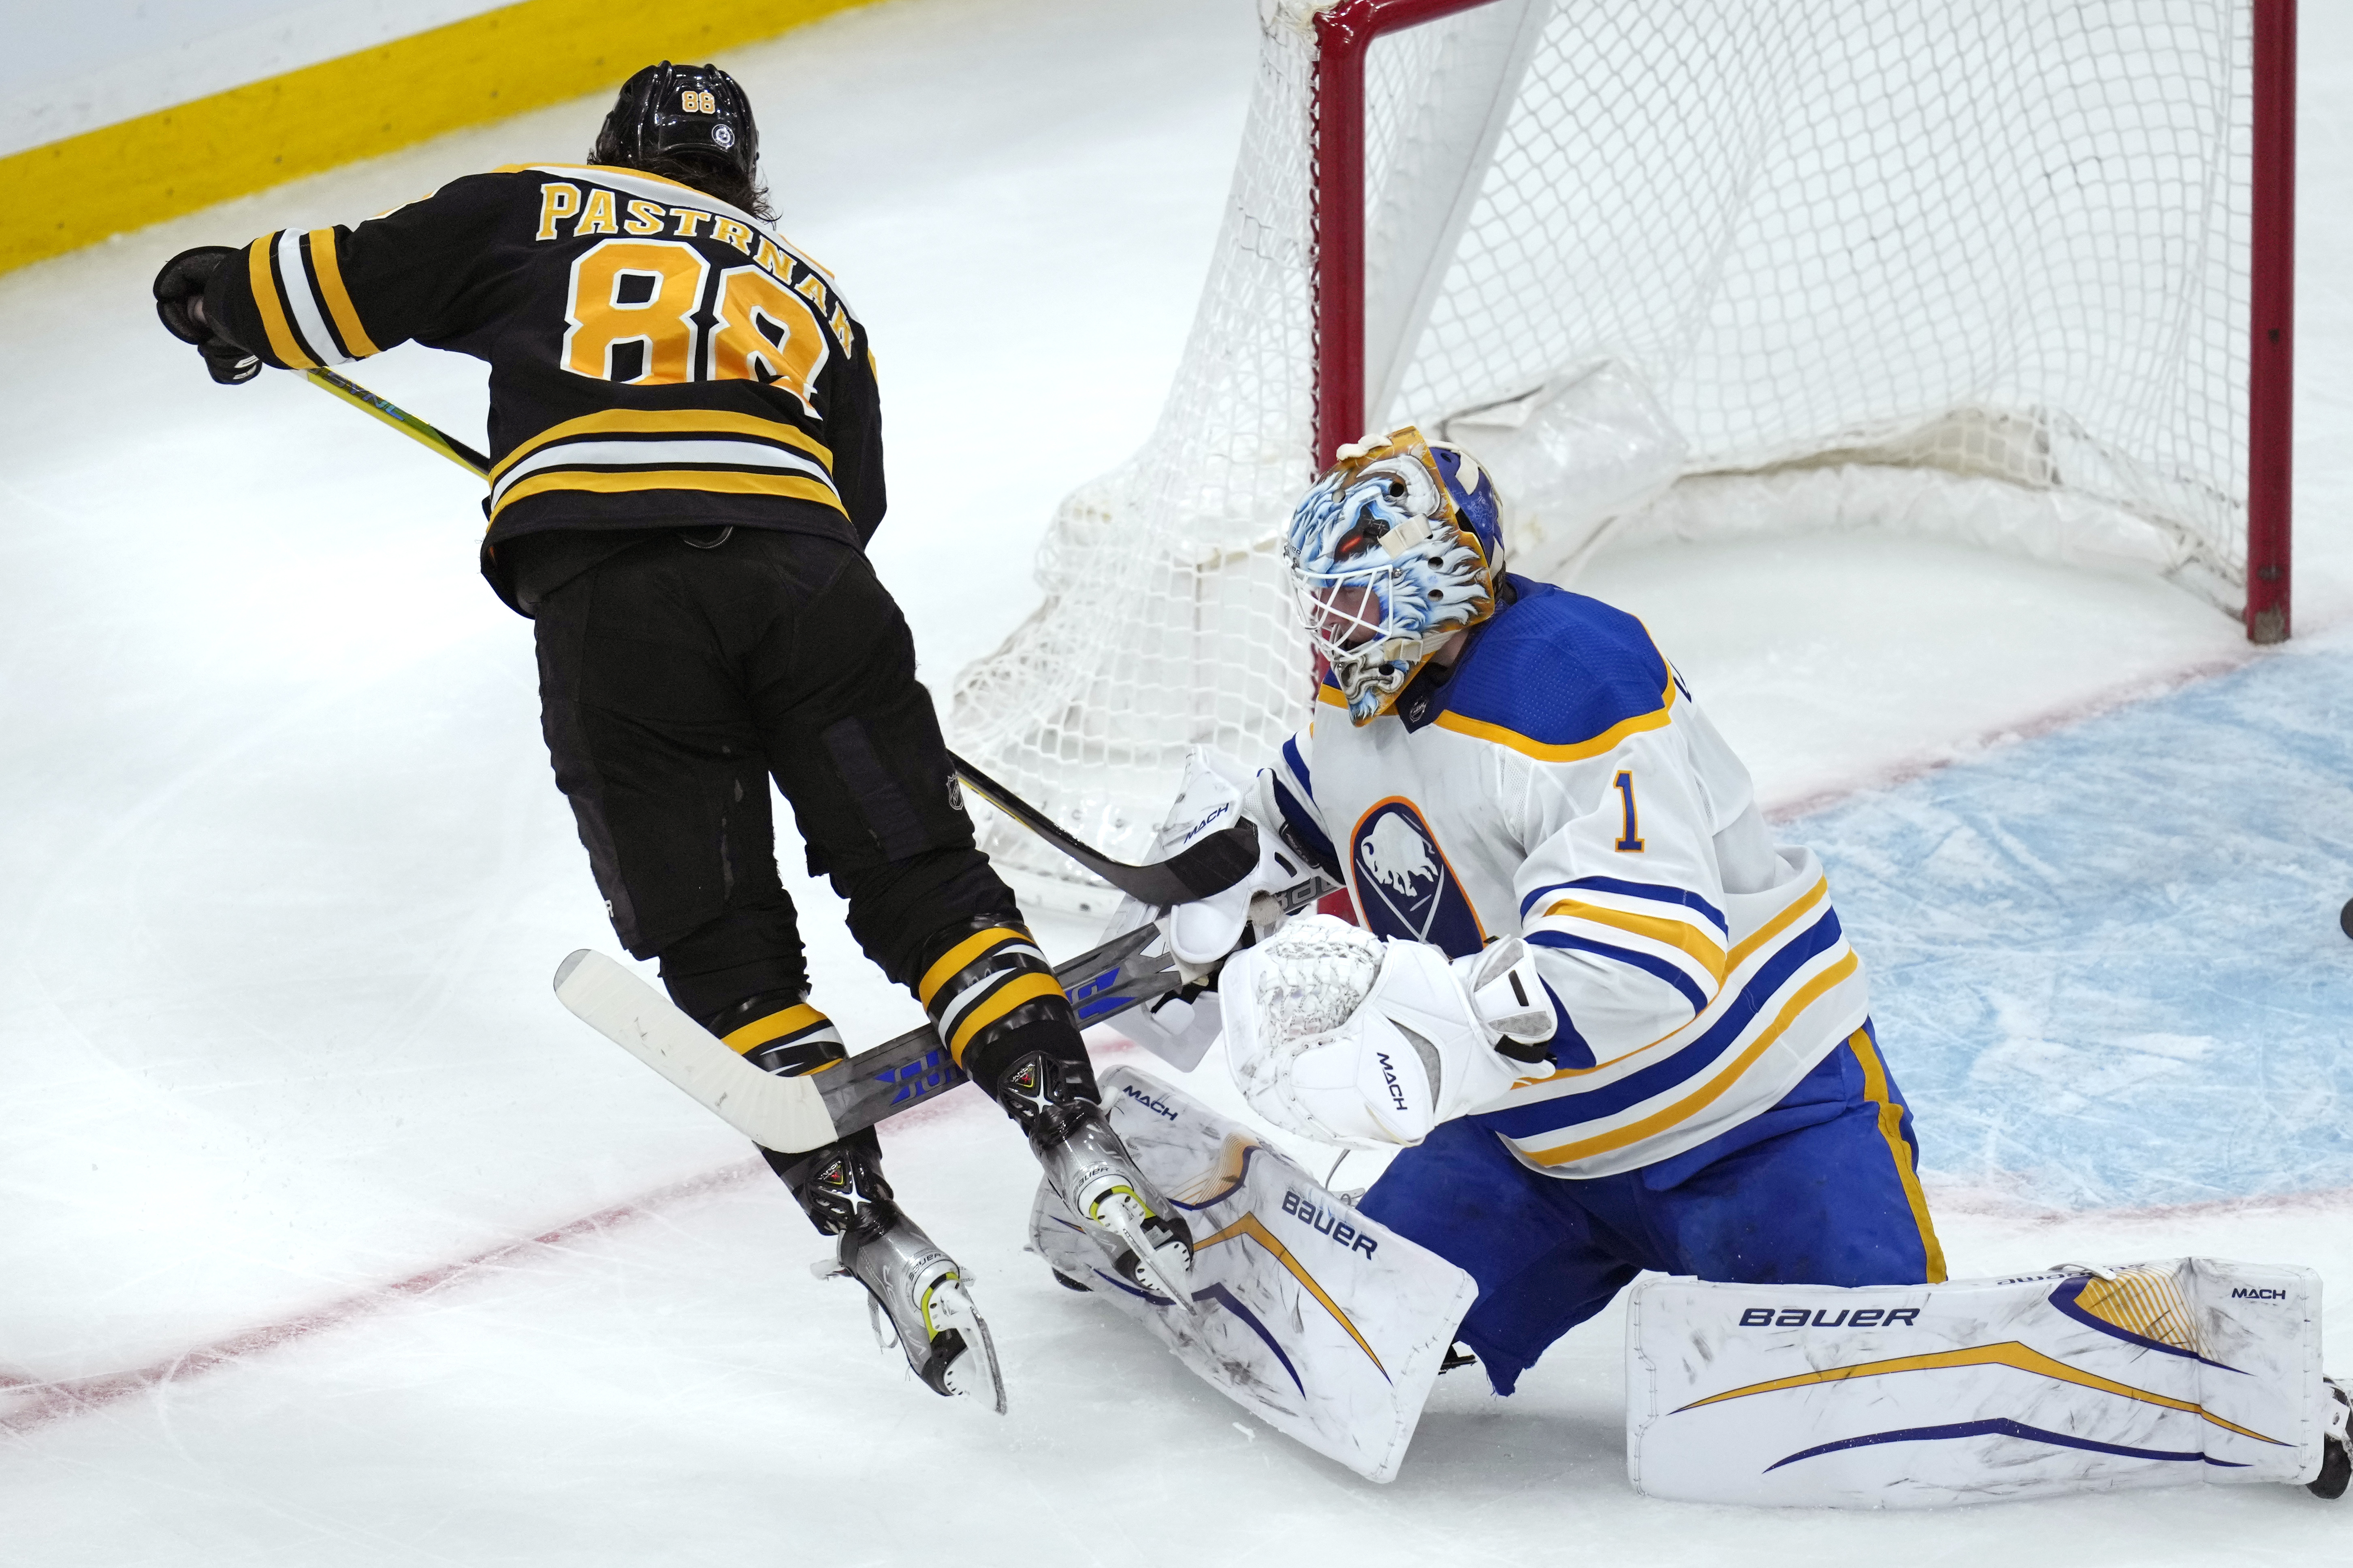 Sabres goalie Luukkonen wins 1st NHL start vs Bruins, Buffalo Sabres